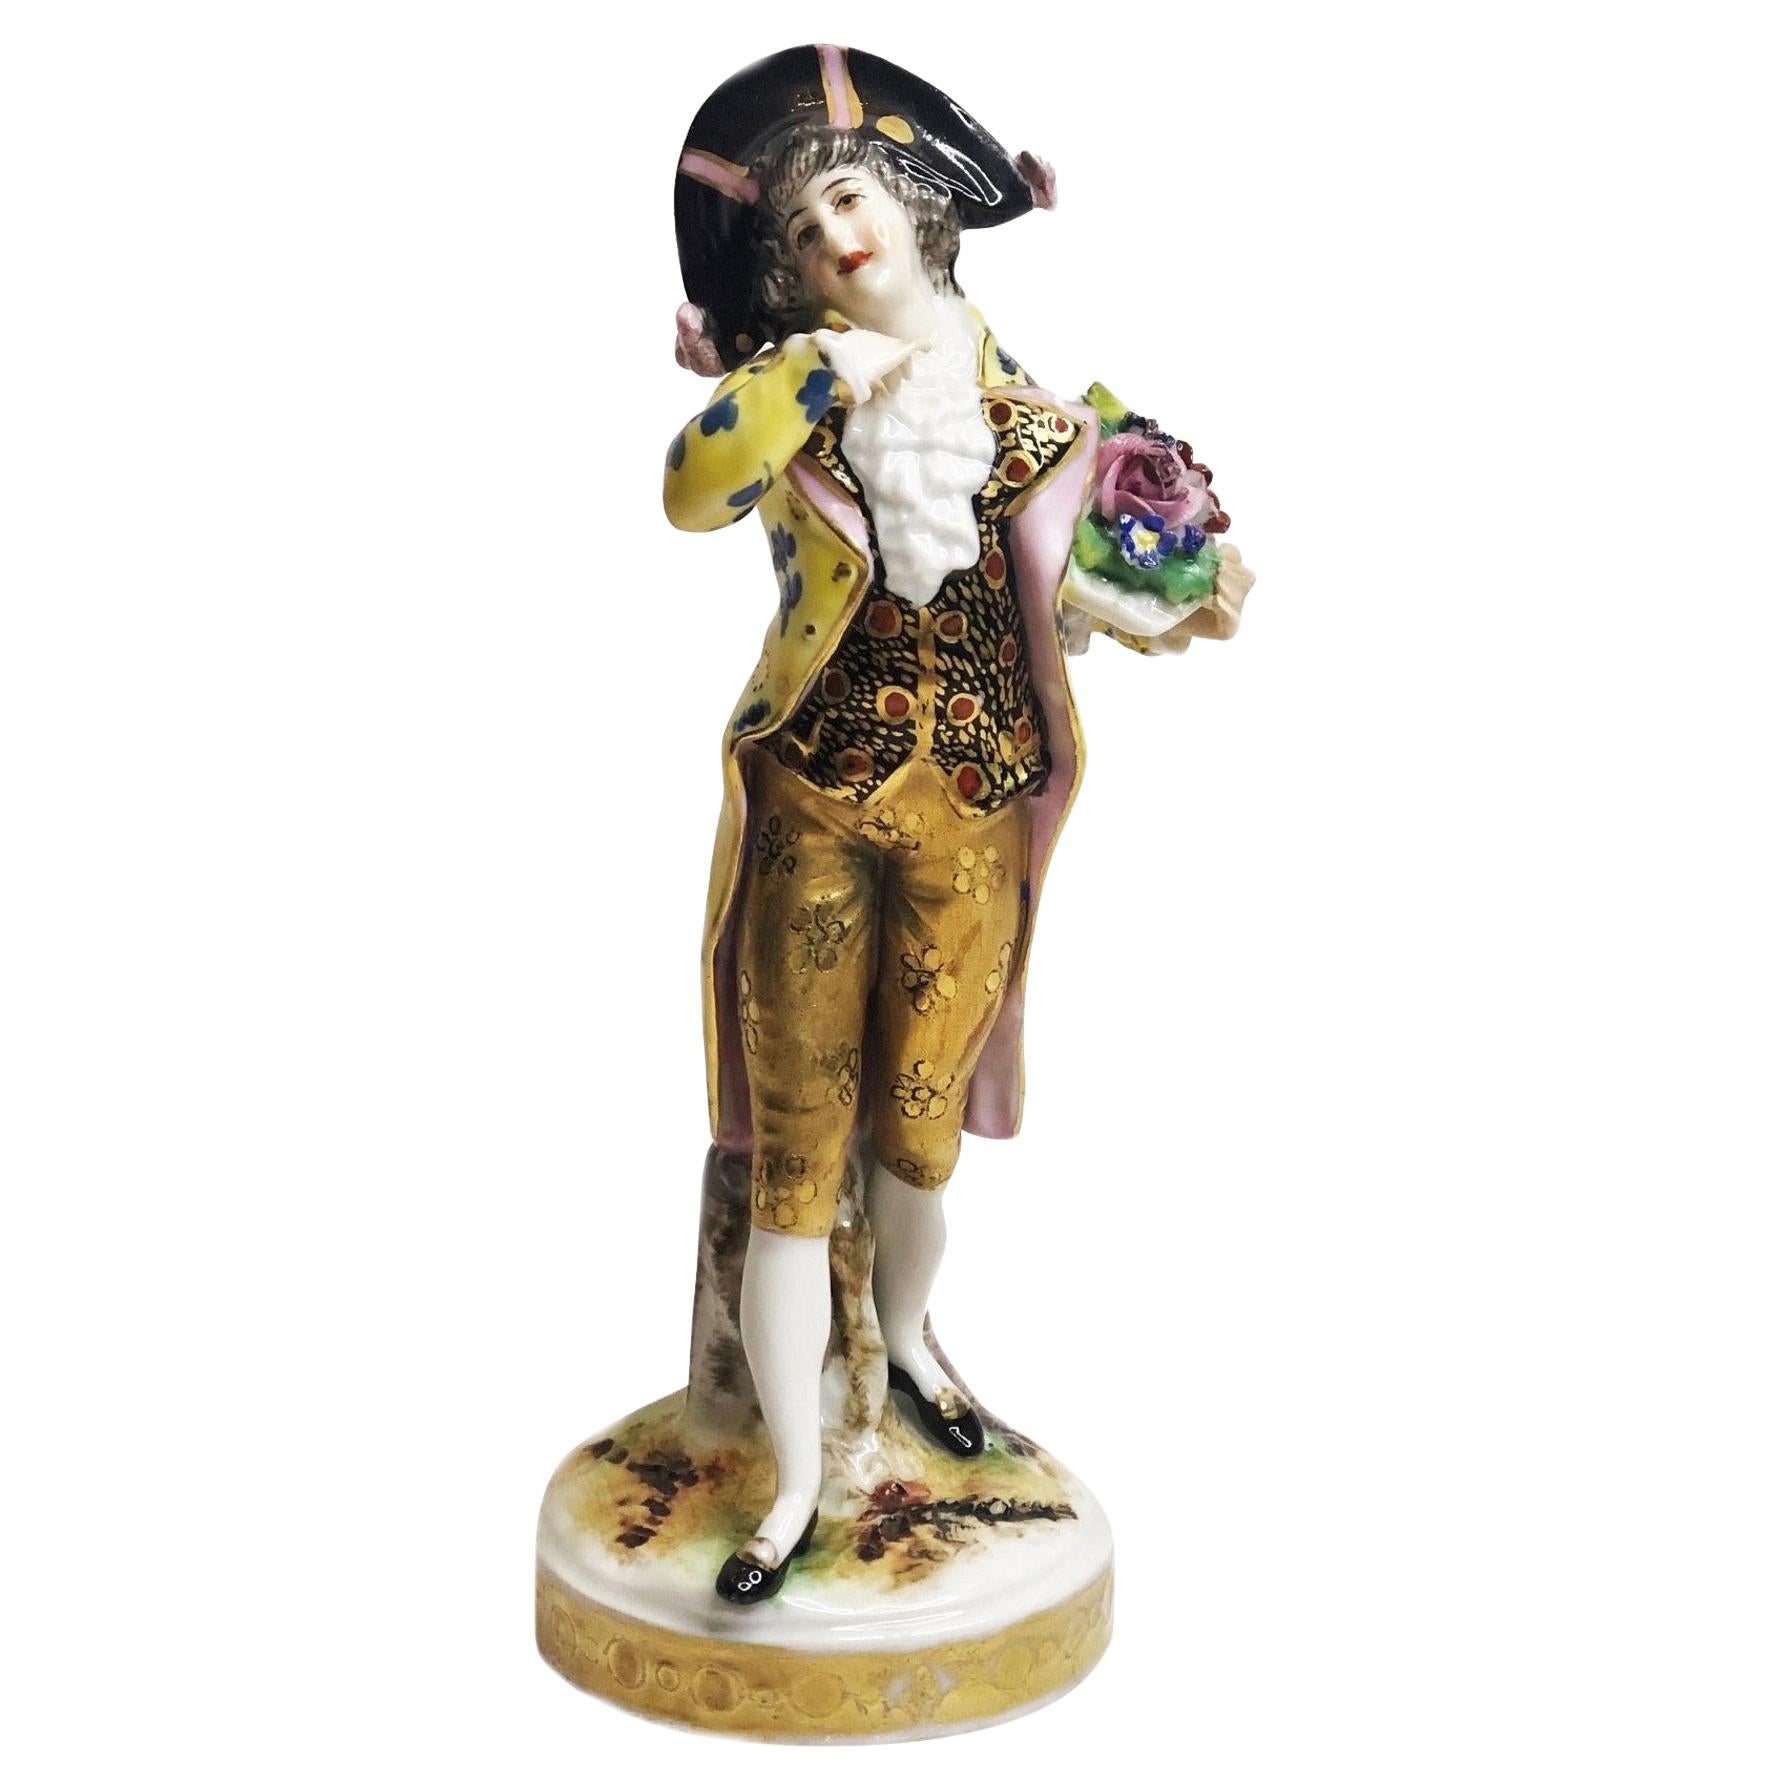 Carl Thieme Dresdener Porzellanfigur eines noblen Gentleman in Love, ca. 1870er Jahre